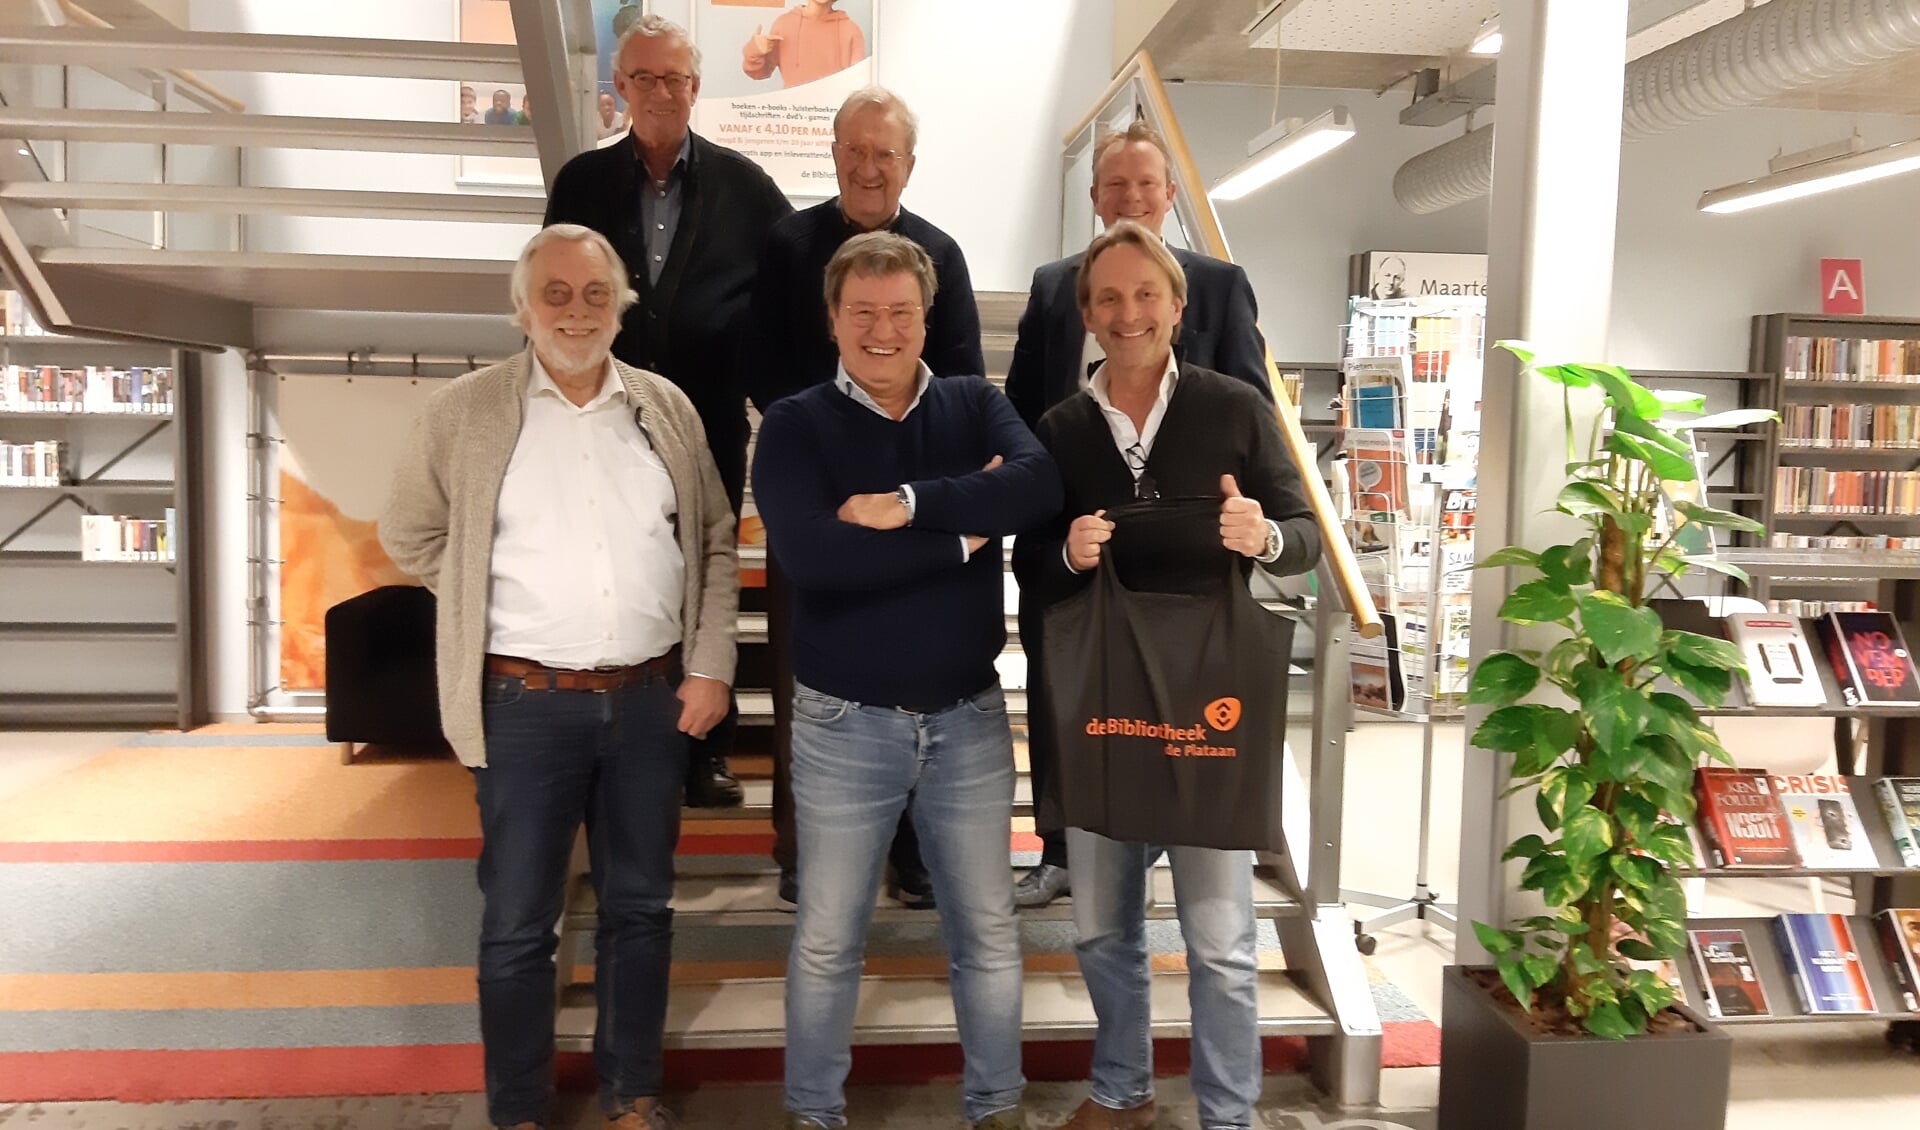 Gerrit Langelaar, Jaap Kroonenburg, Marc Kwakkelstein, Sybrand van Haersma Buma, Wouter de Nie en Wybe Knierim volgden een training om Taalmaatje te worden. 